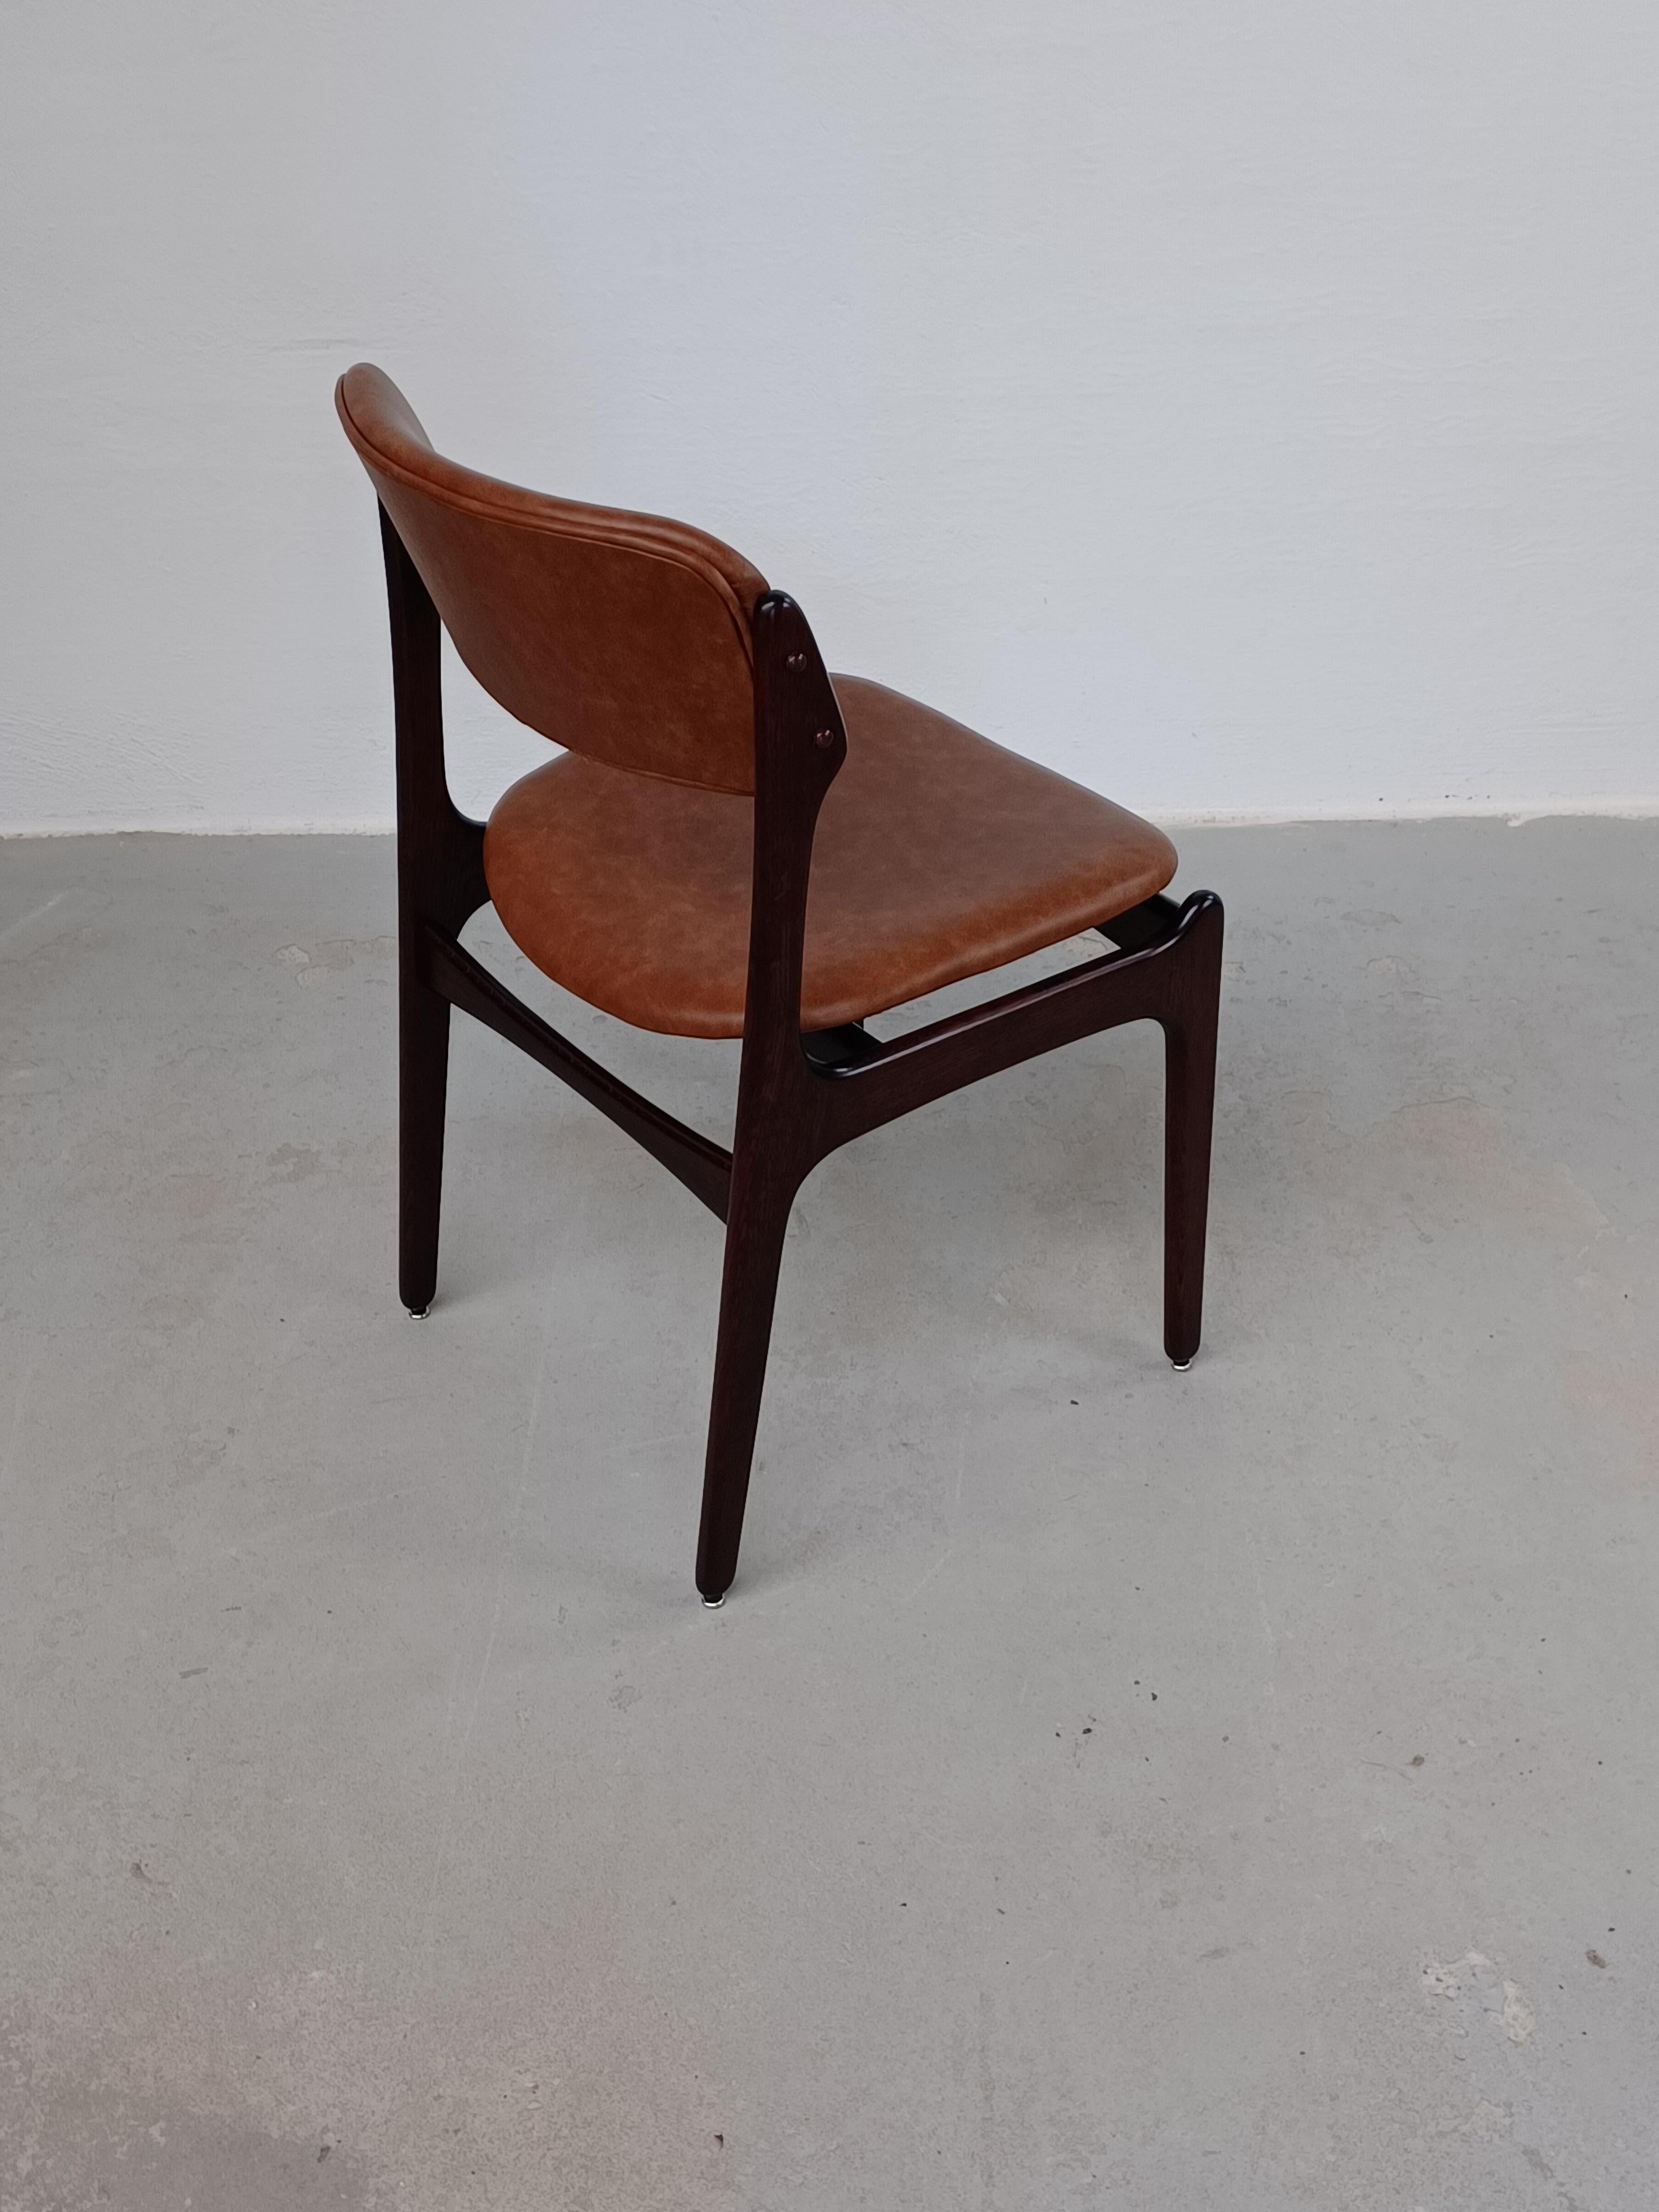 Chêne Erik Buch - Ensemble de huit chaises de salle à manger en chêne brun clair entièrement restaurées, tapissées, incluses dans le rembourrage en vente